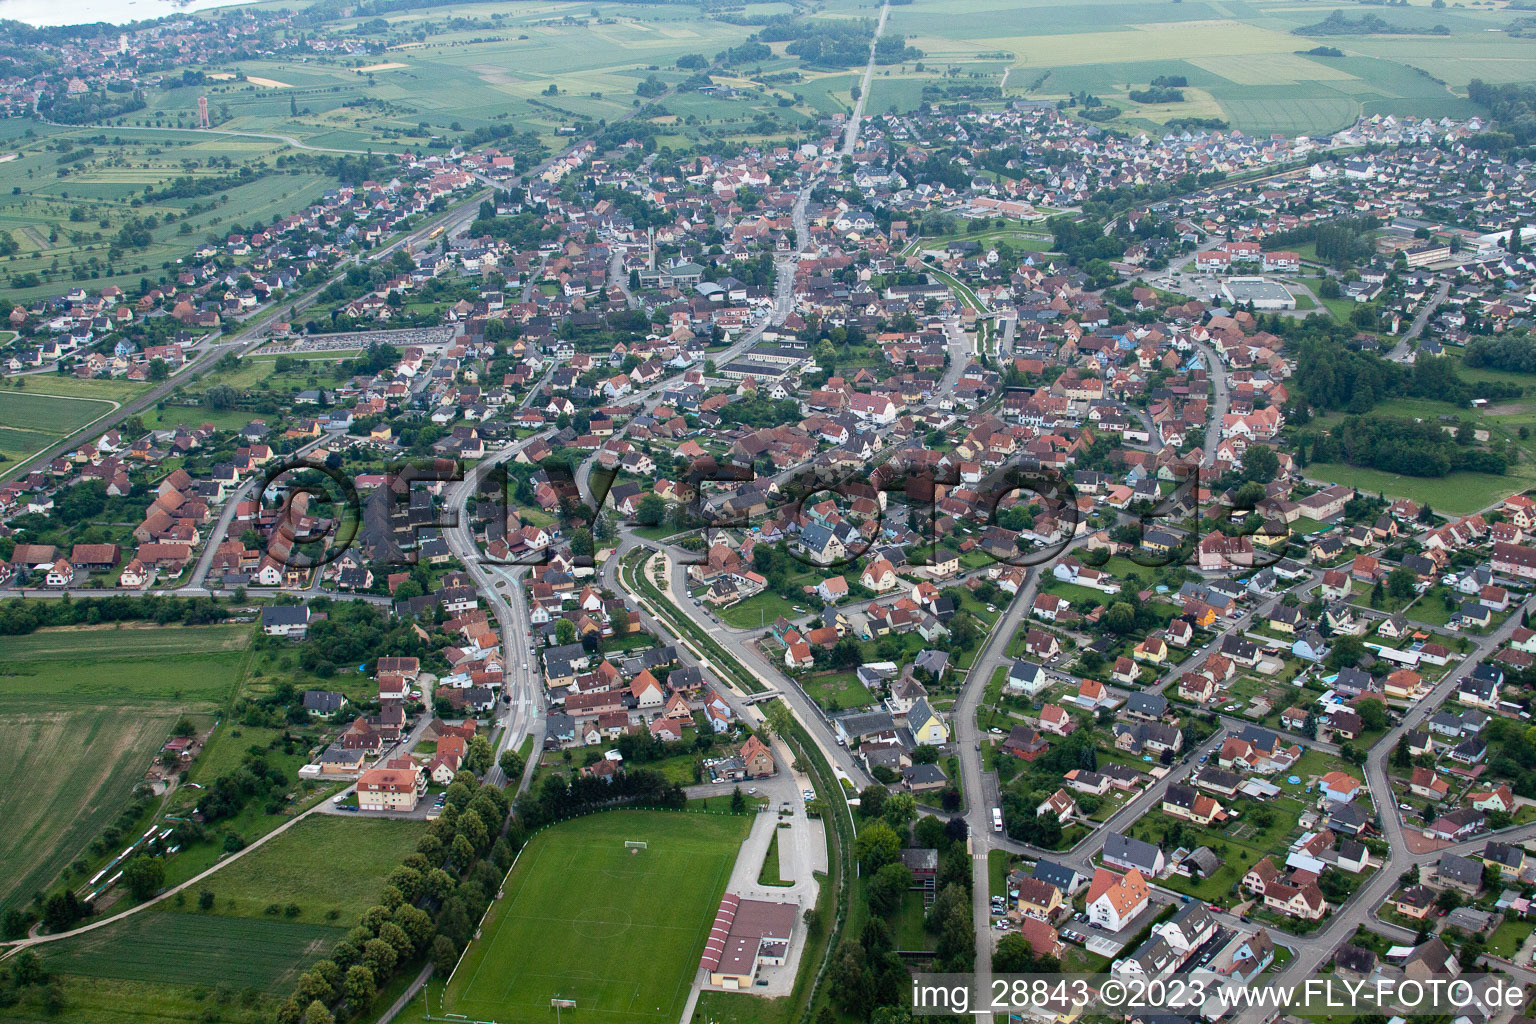 Luftbild von Herrlisheim im Bundesland Bas-Rhin, Frankreich